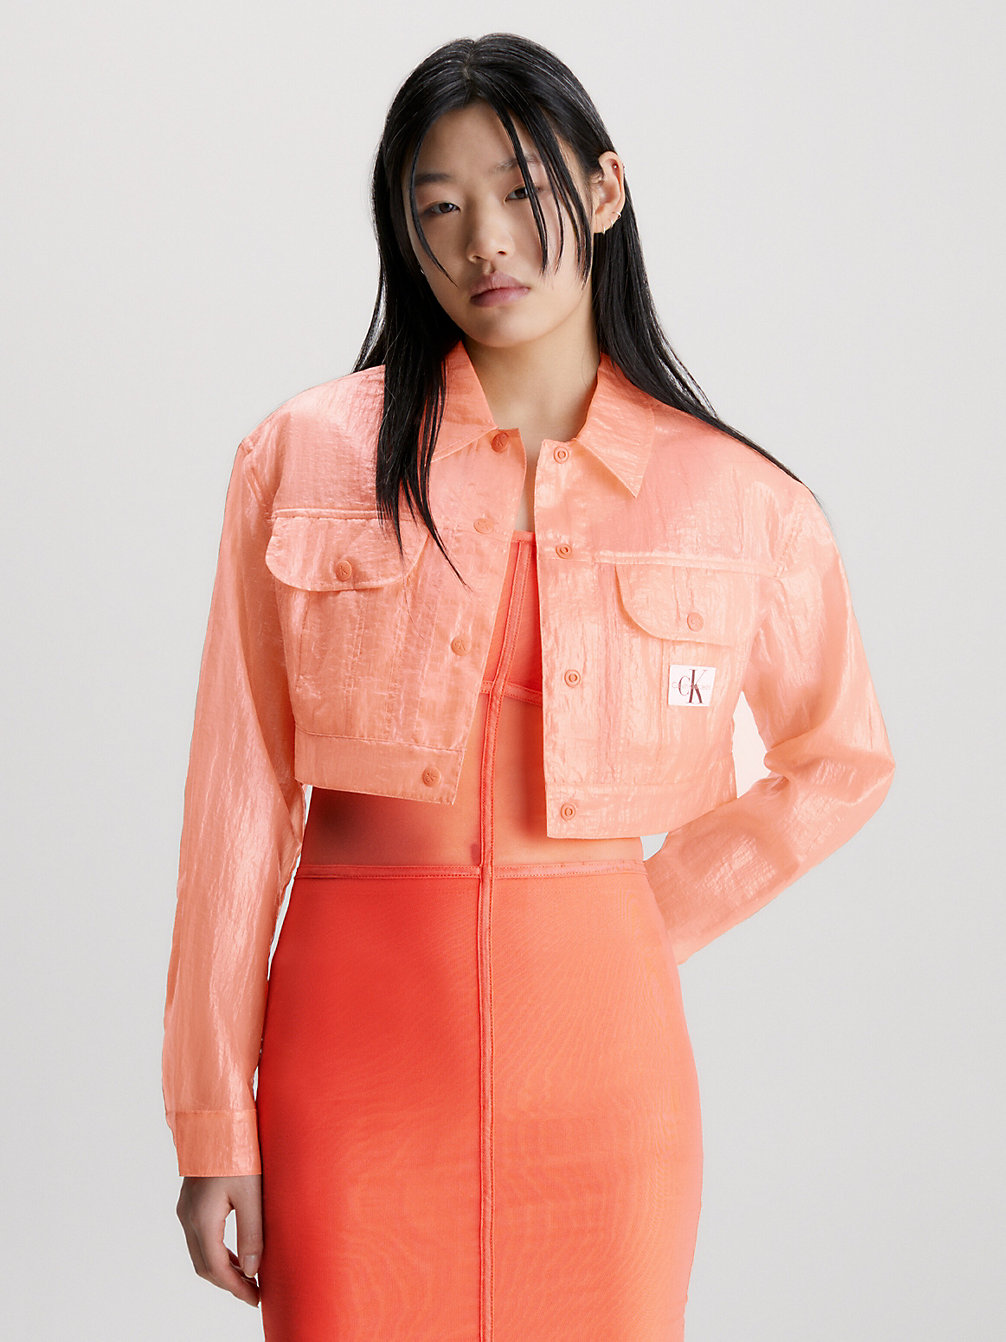 SUMMER SQUASH Transparente Cropped Jacke Aus Nylon Im Knitter-Look undefined Damen Calvin Klein